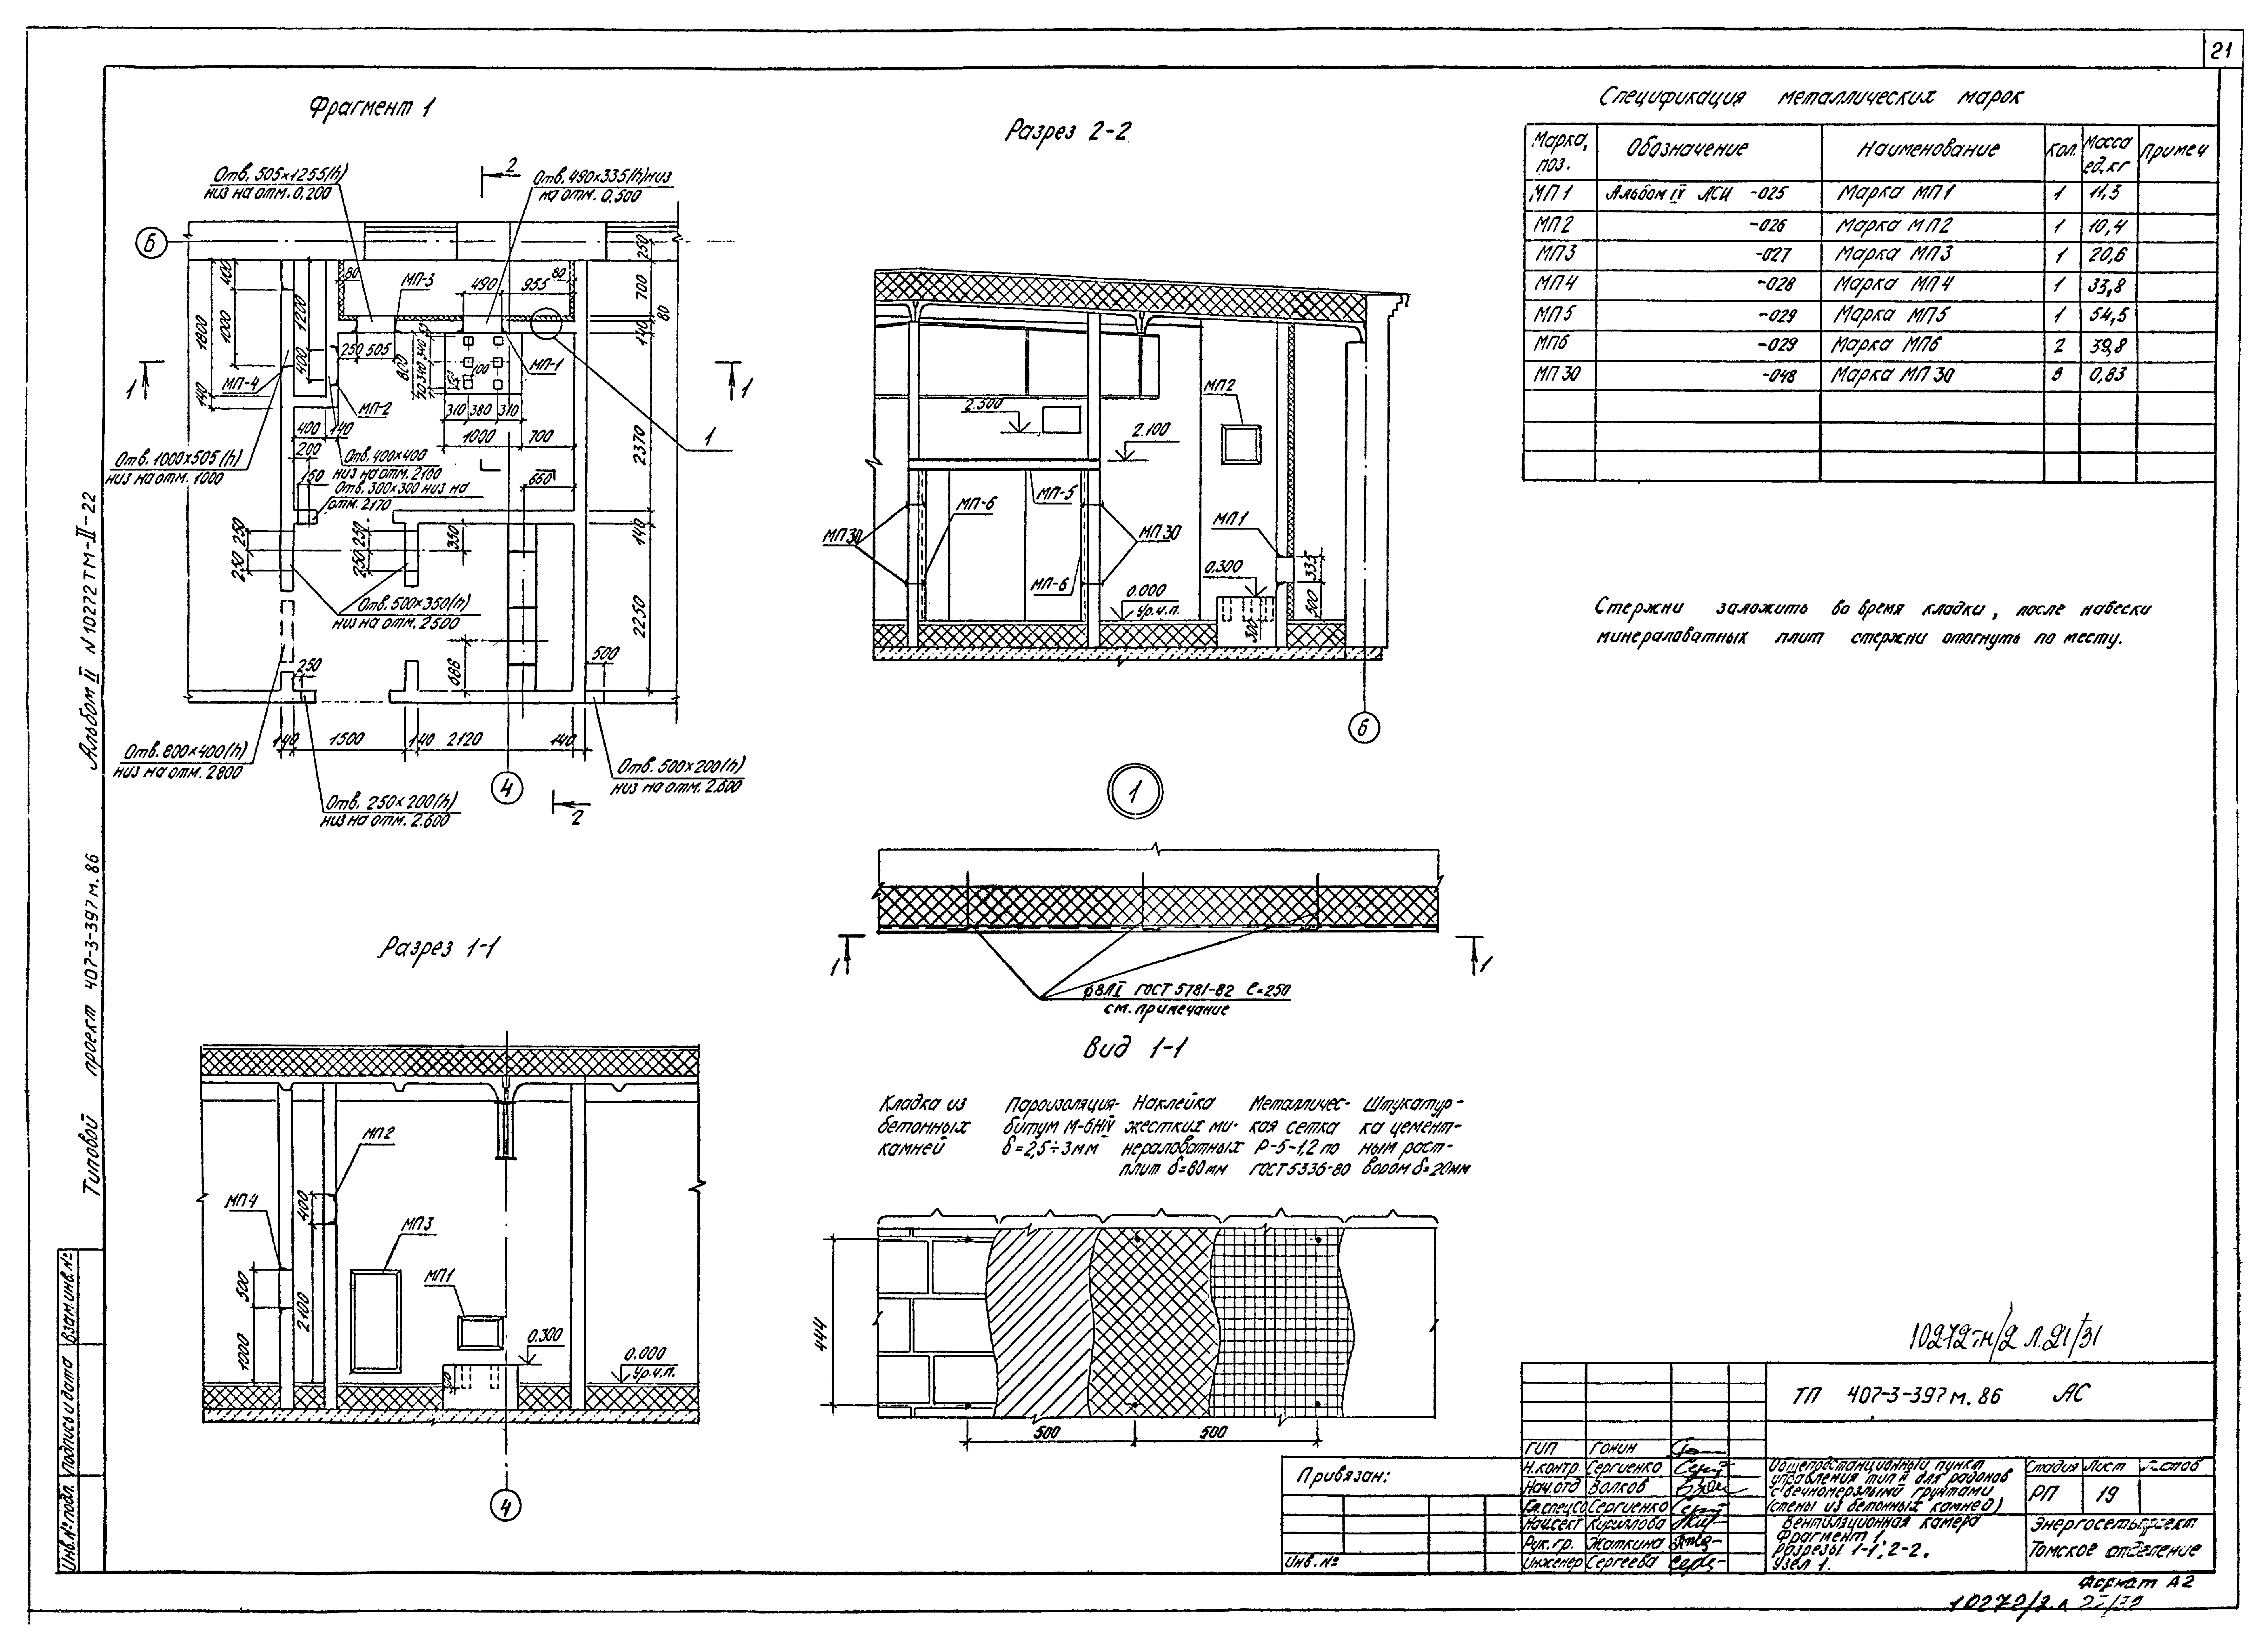 Типовой проект 407-3-397м.86